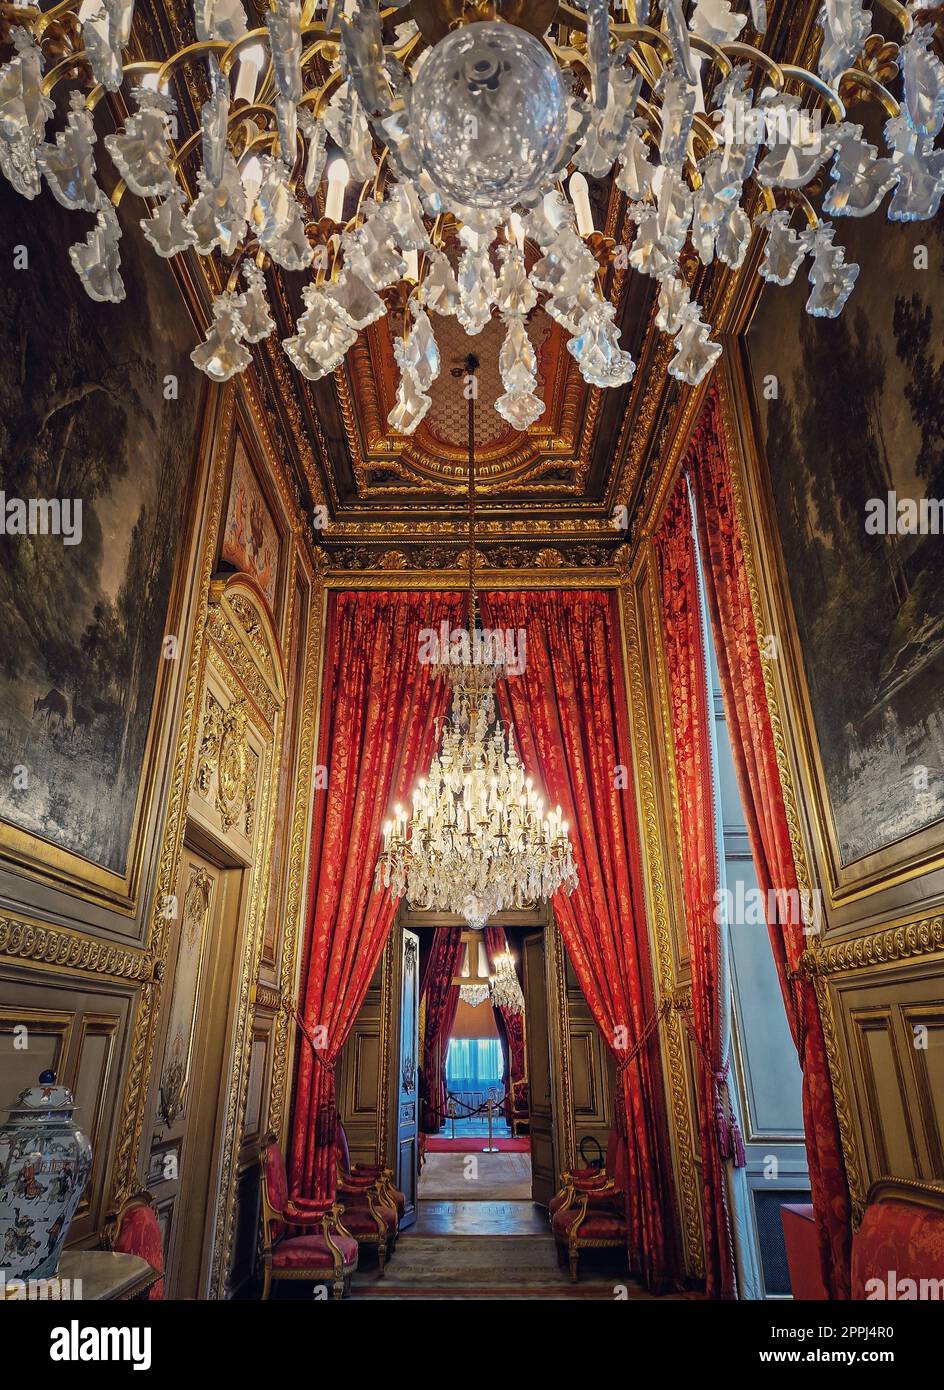 Splendidi appartamenti Napoleon al Louvre. Camere familiari reali con tende cardinal rosse, pareti dorate, dipinti e cristallo ch Foto Stock